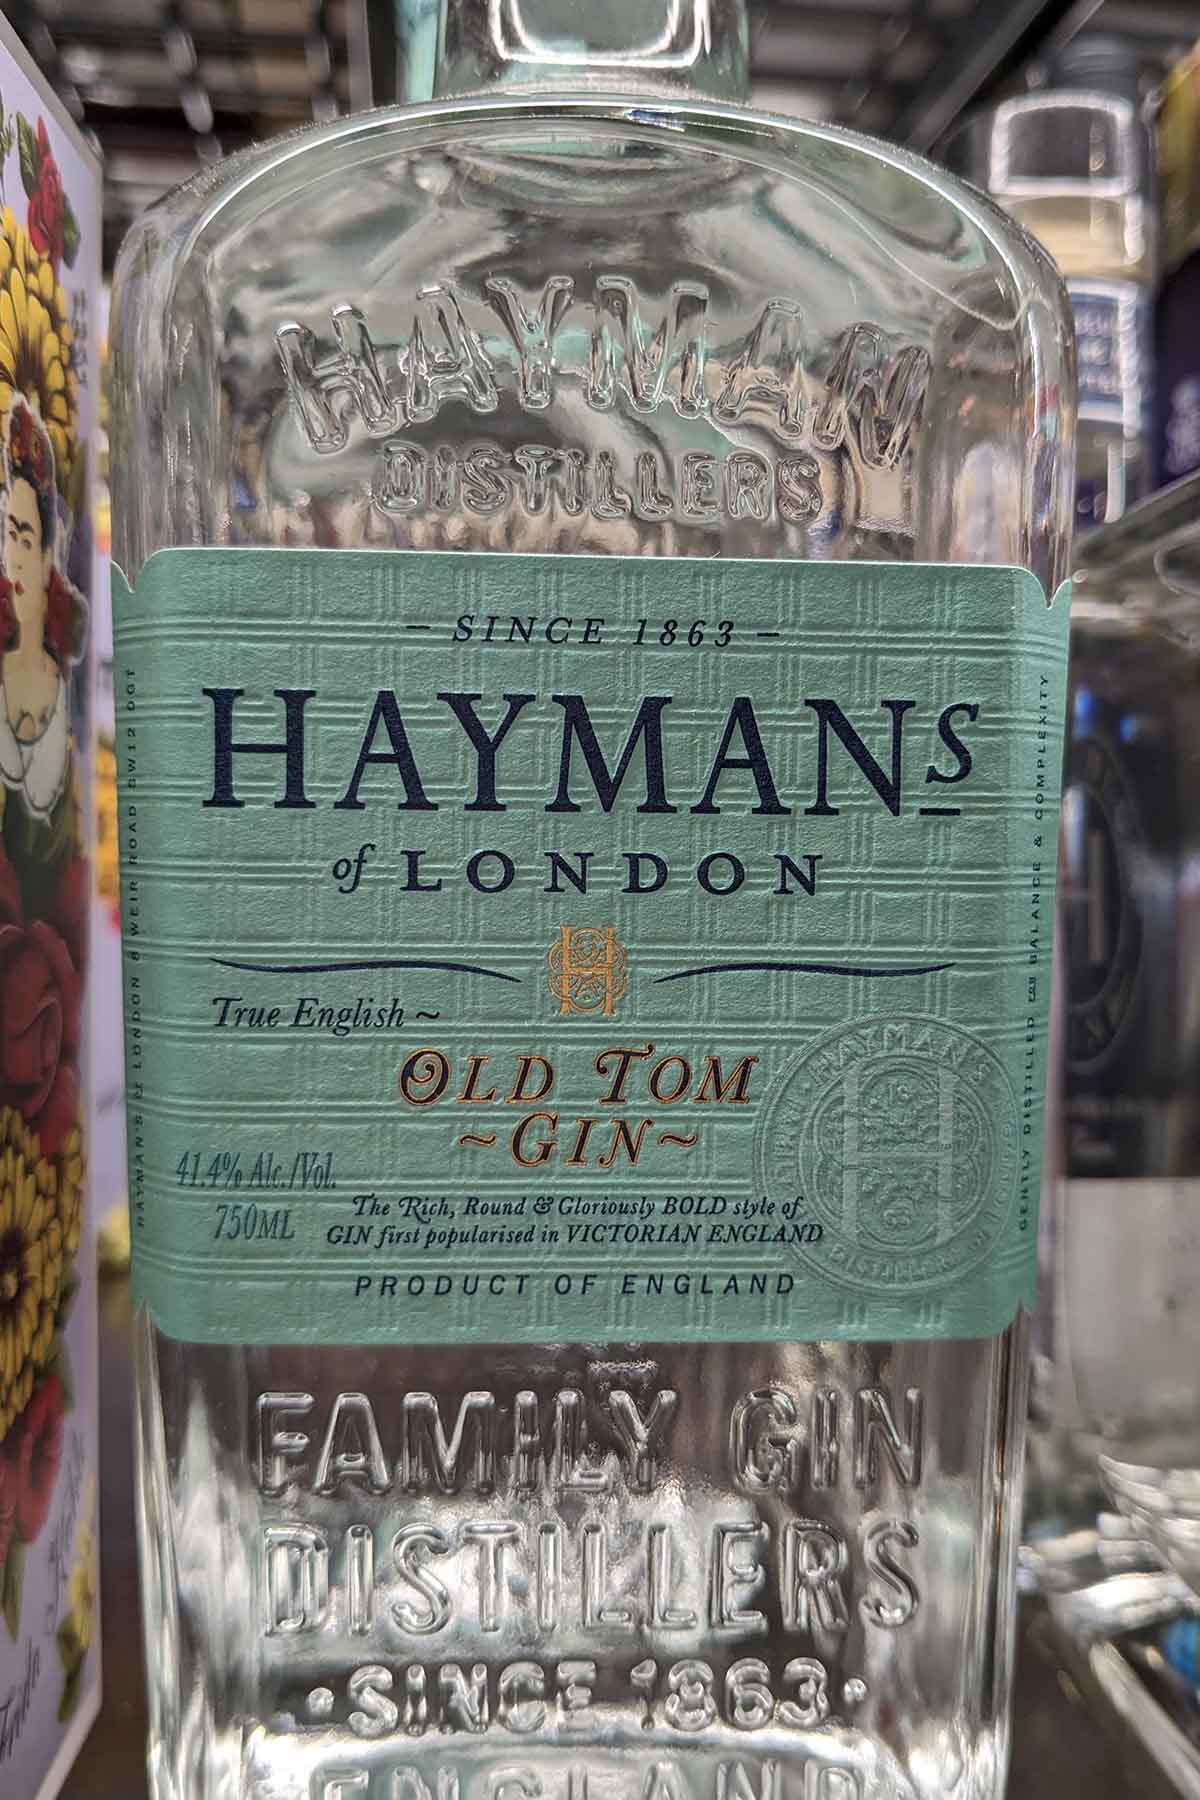 bottle of Haymans Old Tom gin.